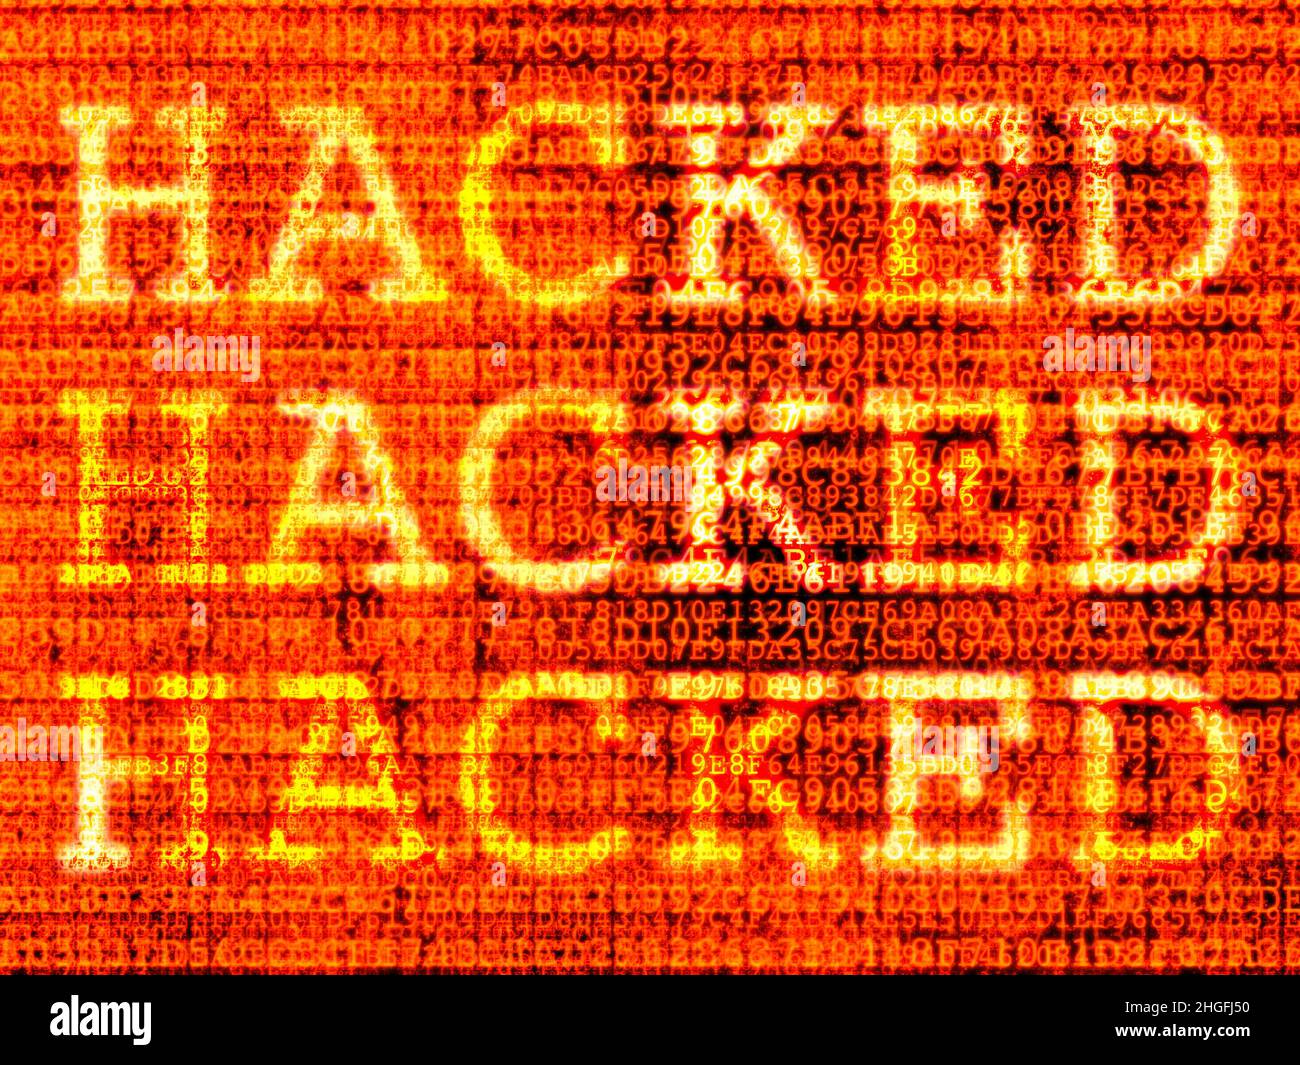 Schermo di un computer hacked con codice dannoso, virus, cavallo di Troia, malware Foto Stock